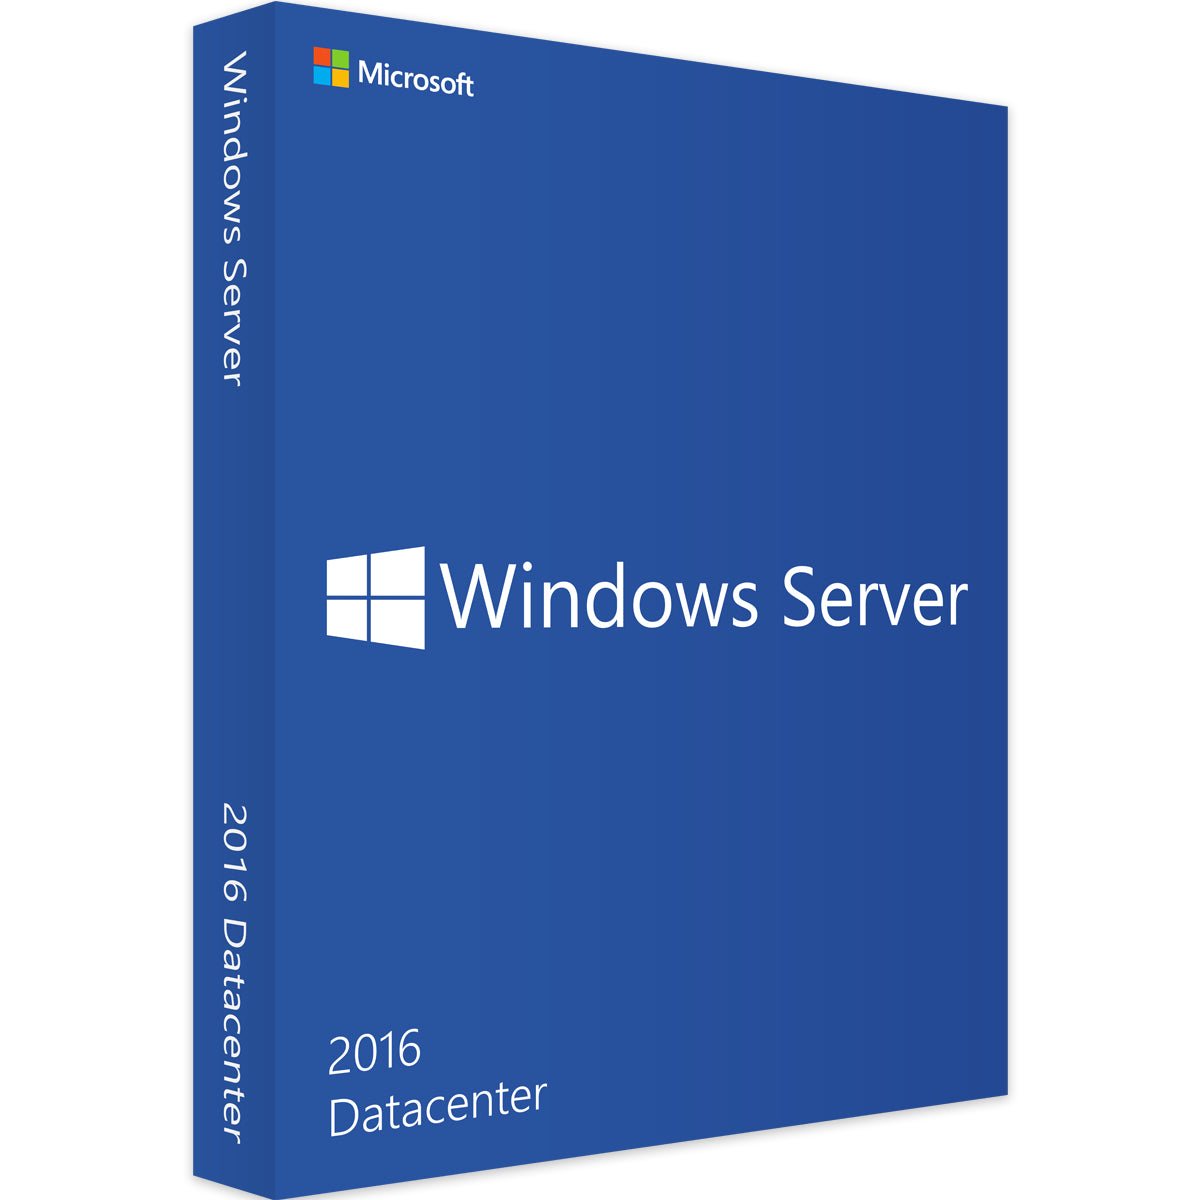 Microsoft Windows Server 2016 Datacenter - officepakke.dkMicrosoft Windows Server 2016 Datacenterofficepakke.dkofficepakke.dk